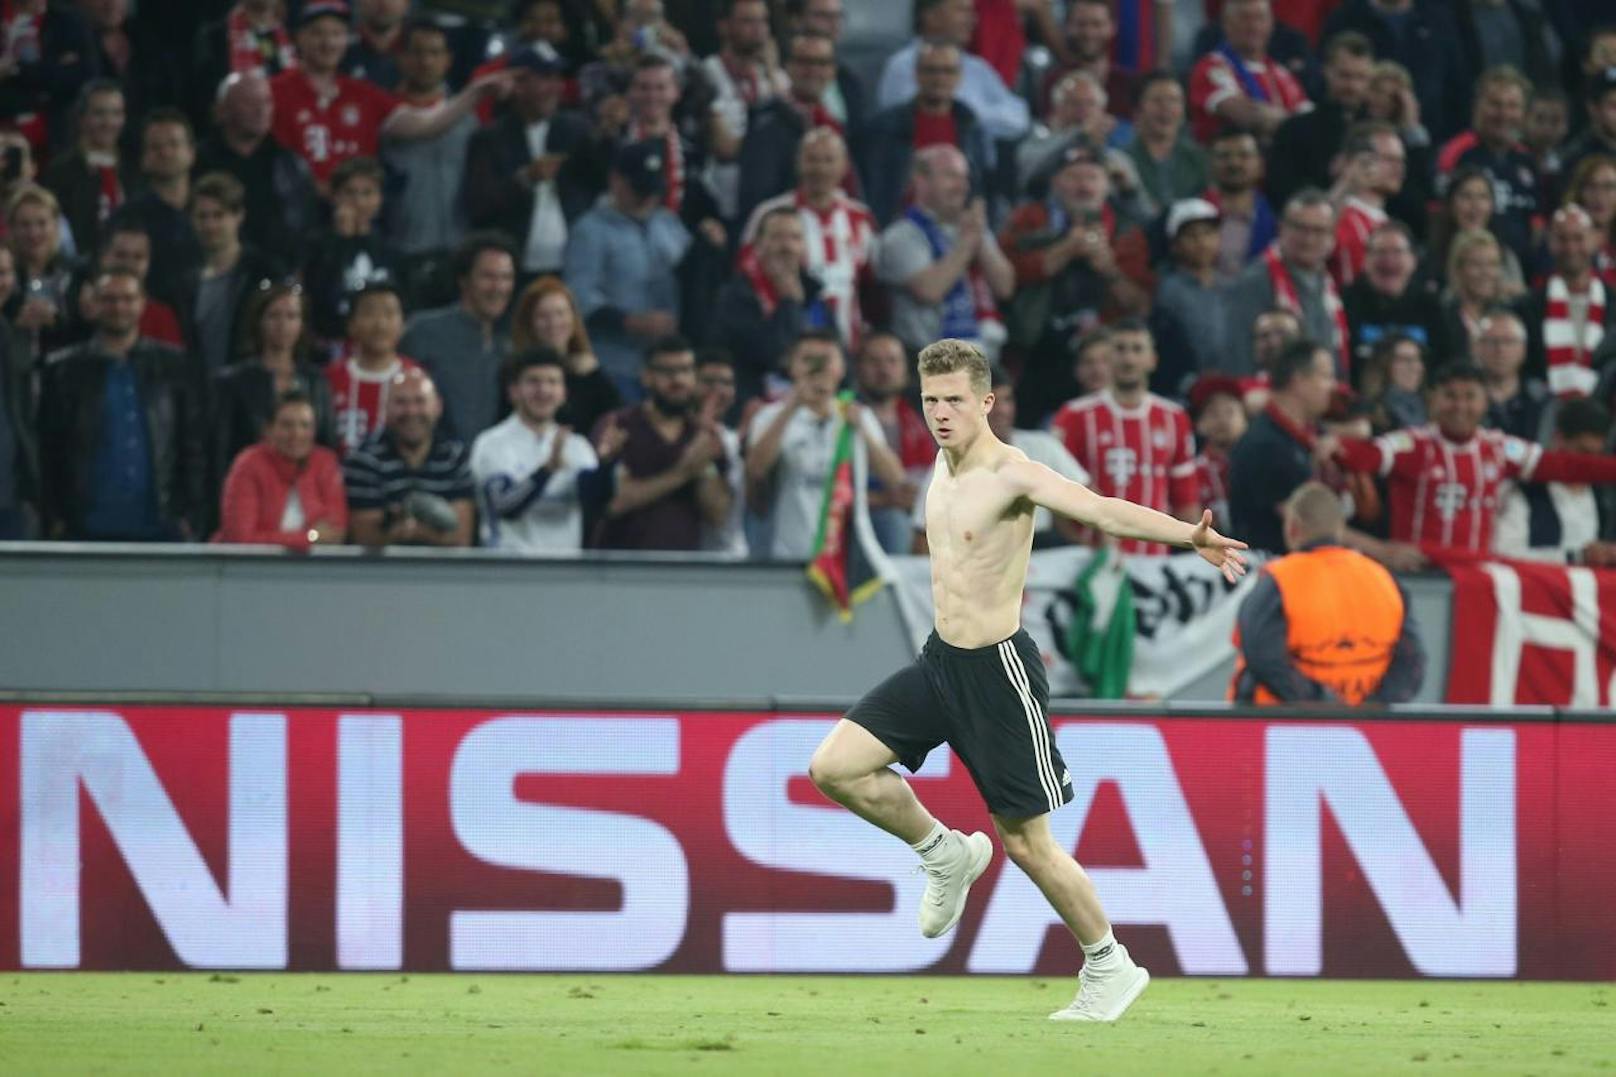 Gleich mehrere Flitzer rannten nach dem Halbfinal-Hinspiel zwischen Bayern und Real (1:2) auf die Spieler zu, wollten Selfies oder wurden handgreiflich. Die Ordner reagierten unsanft mit Football-Tacklings.